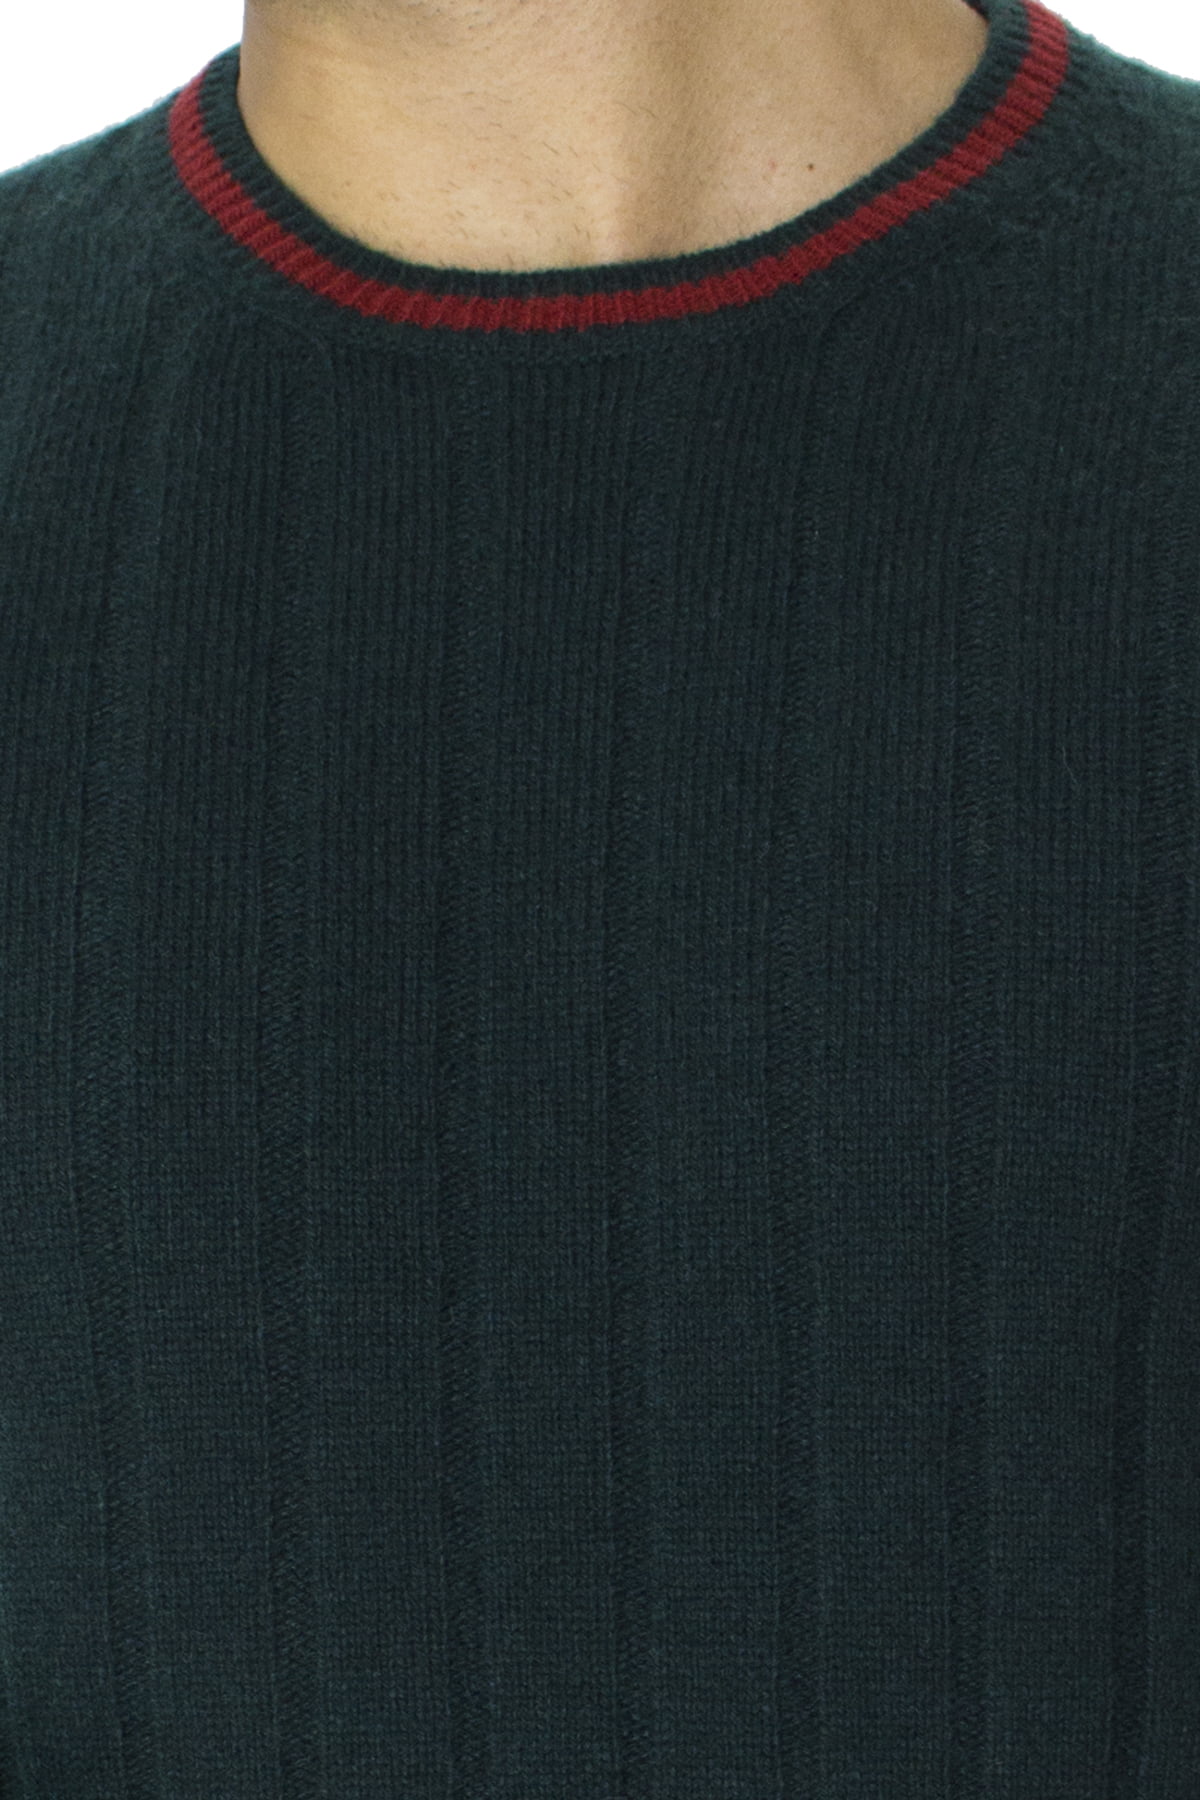 Maglione uomo Girocollo verde a coste in lana merinos con bordini rossi slim fit made in italy